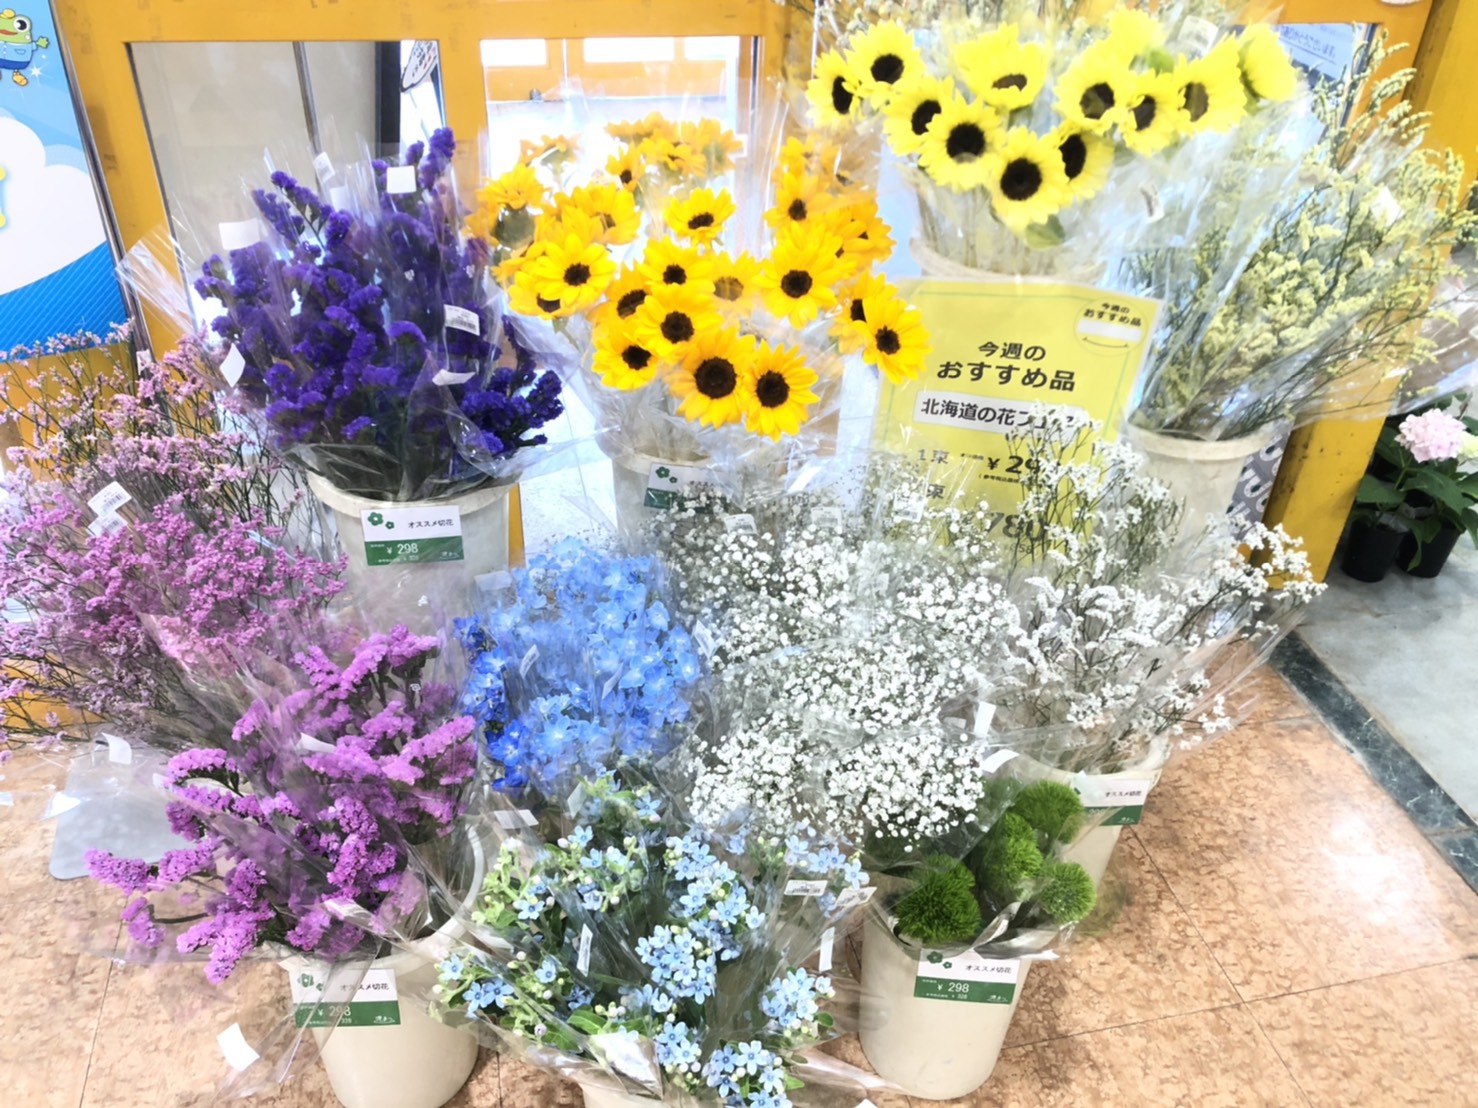 夏本番 北の大地より元気なお花たちを取り揃えて 夏の北海道のお花フェア を開催中 Newscast